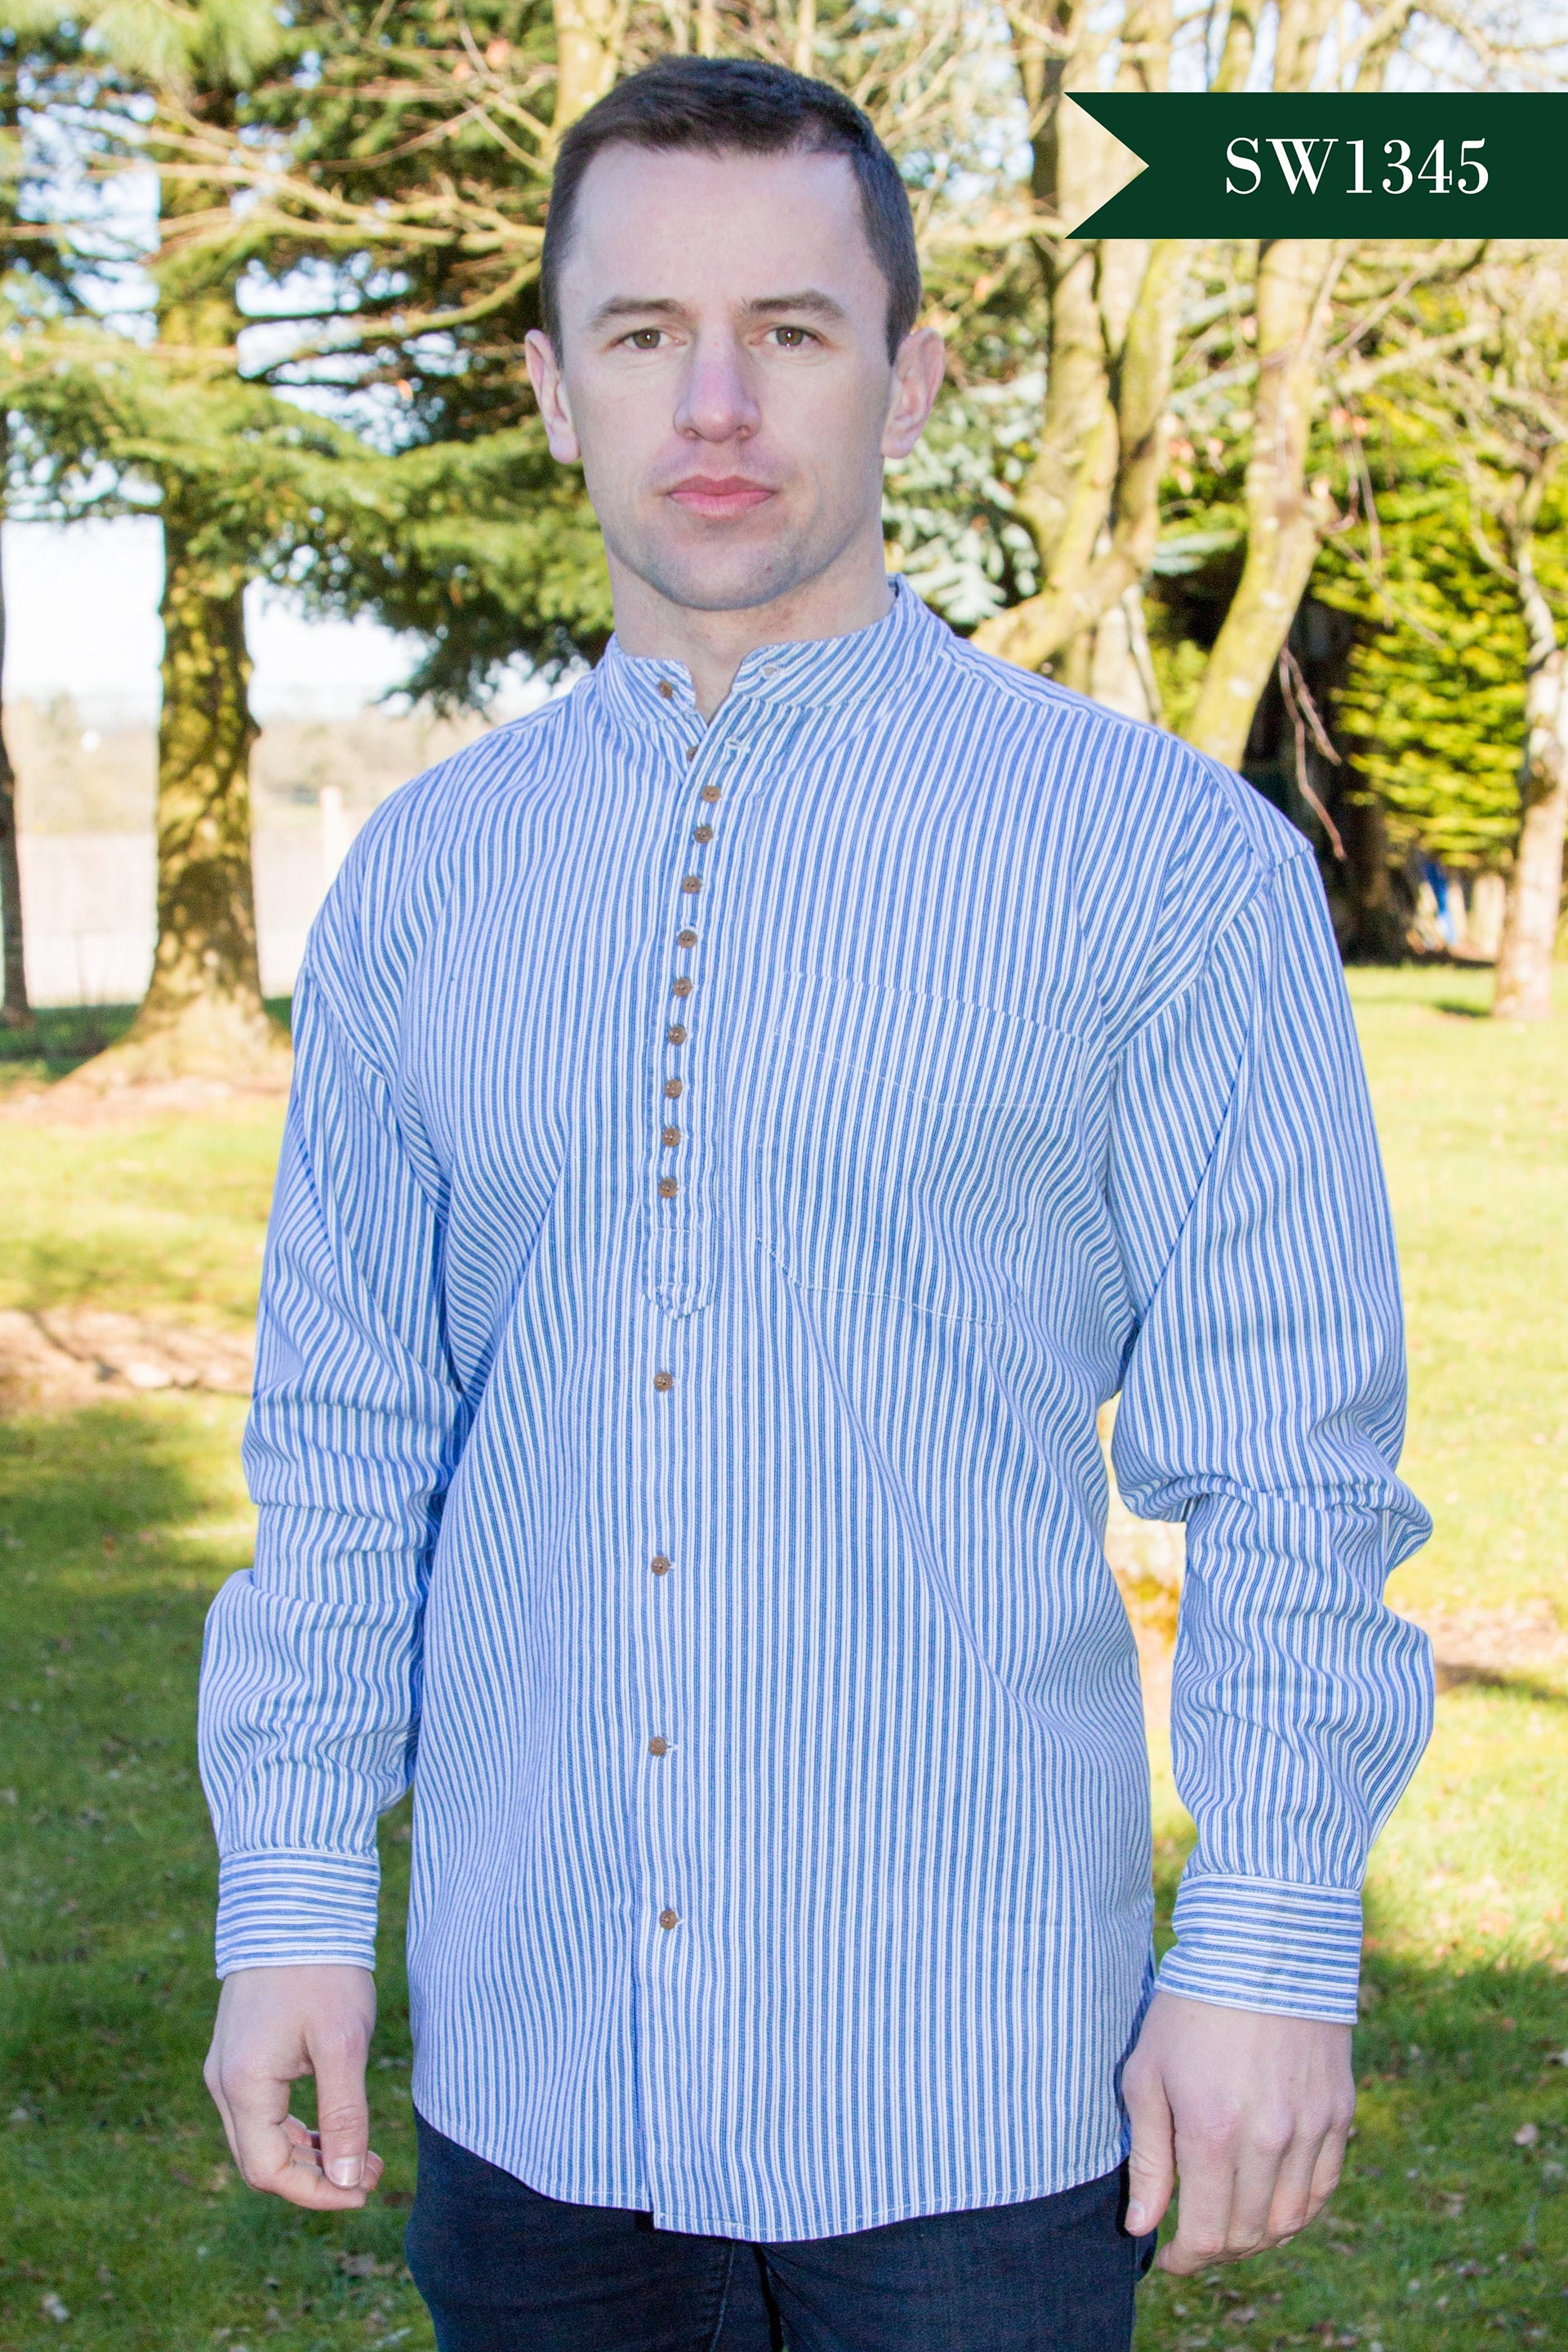 Irish Grandfather Shirt - Blue and White Pinstripe